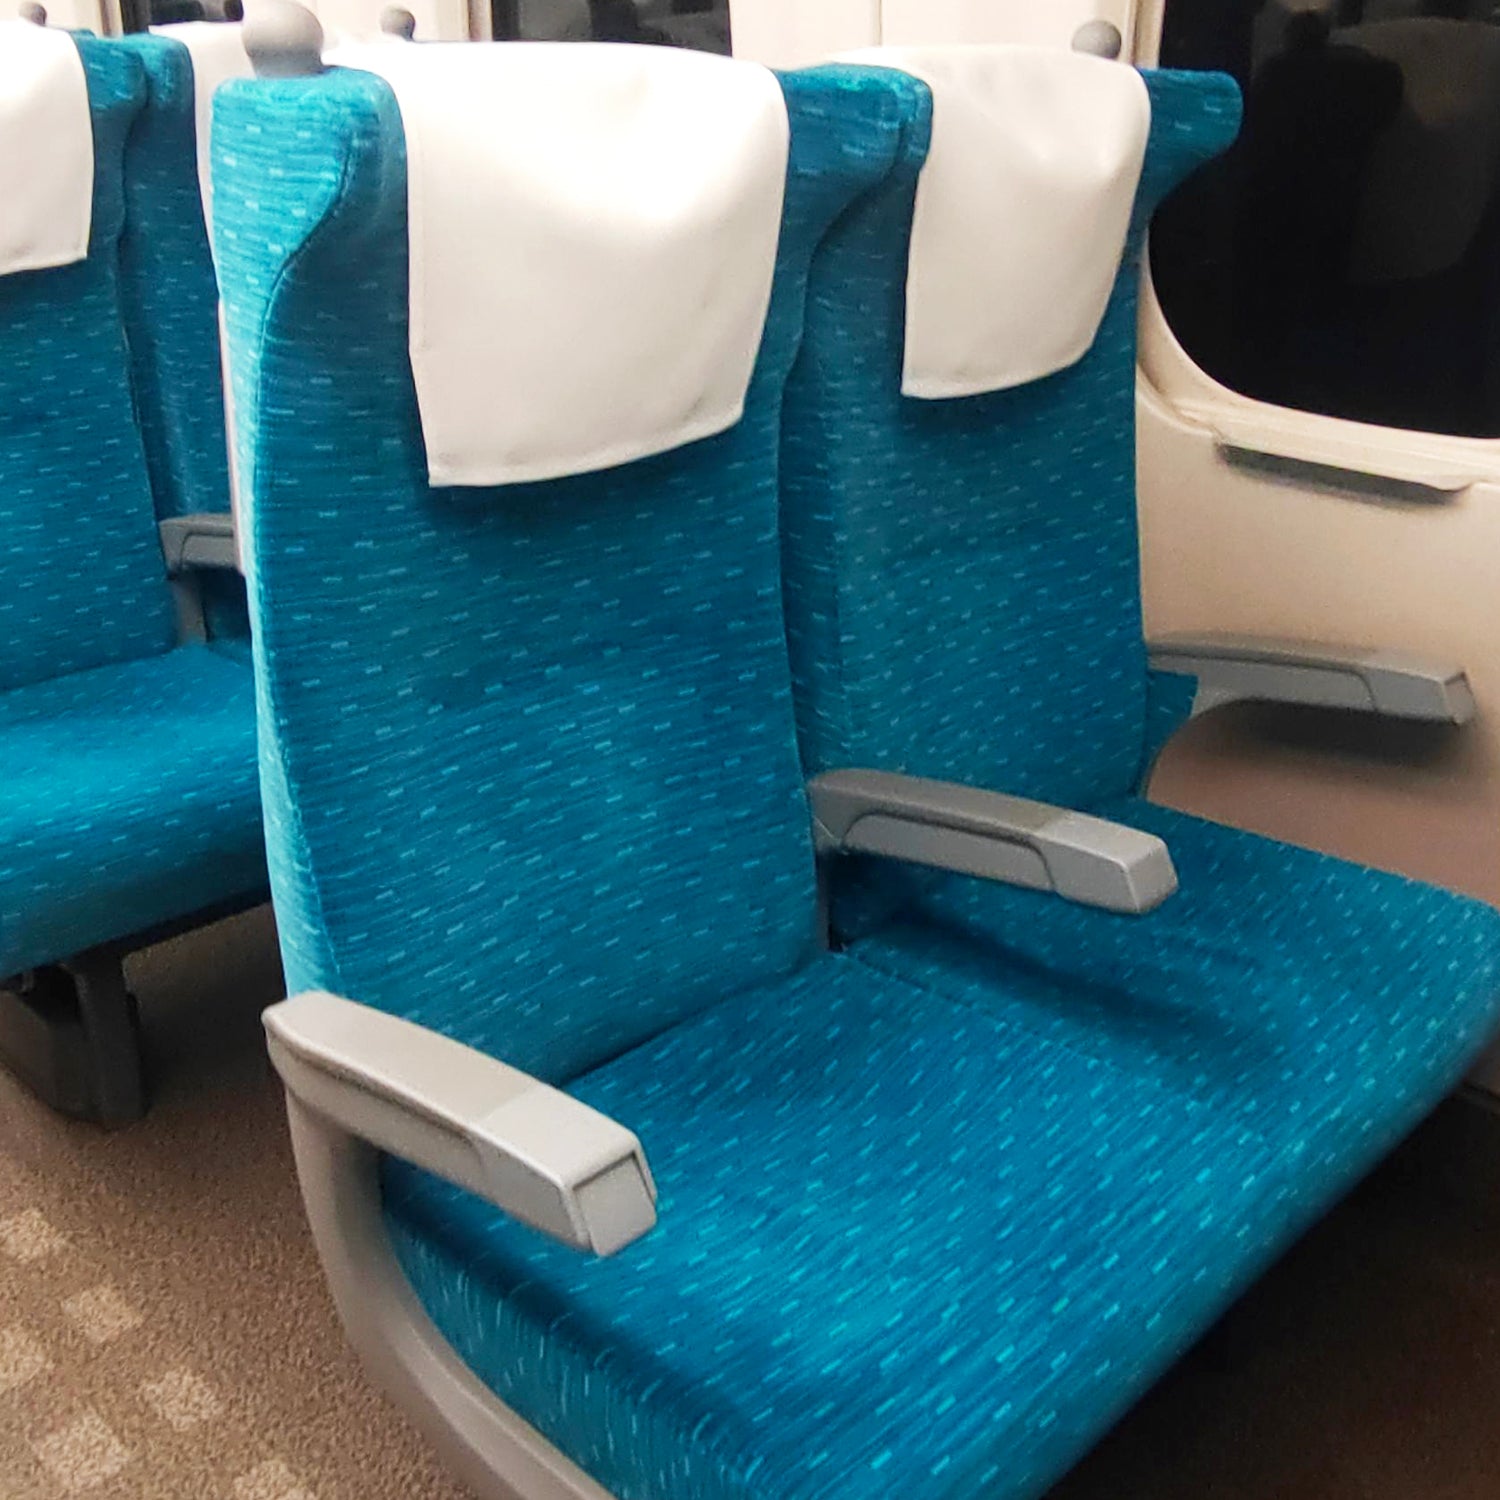 N700A東海道新幹線モケットガジェットポーチの本体素材には、N700A東海道新幹線の座席から取り出された生地を採用しています。